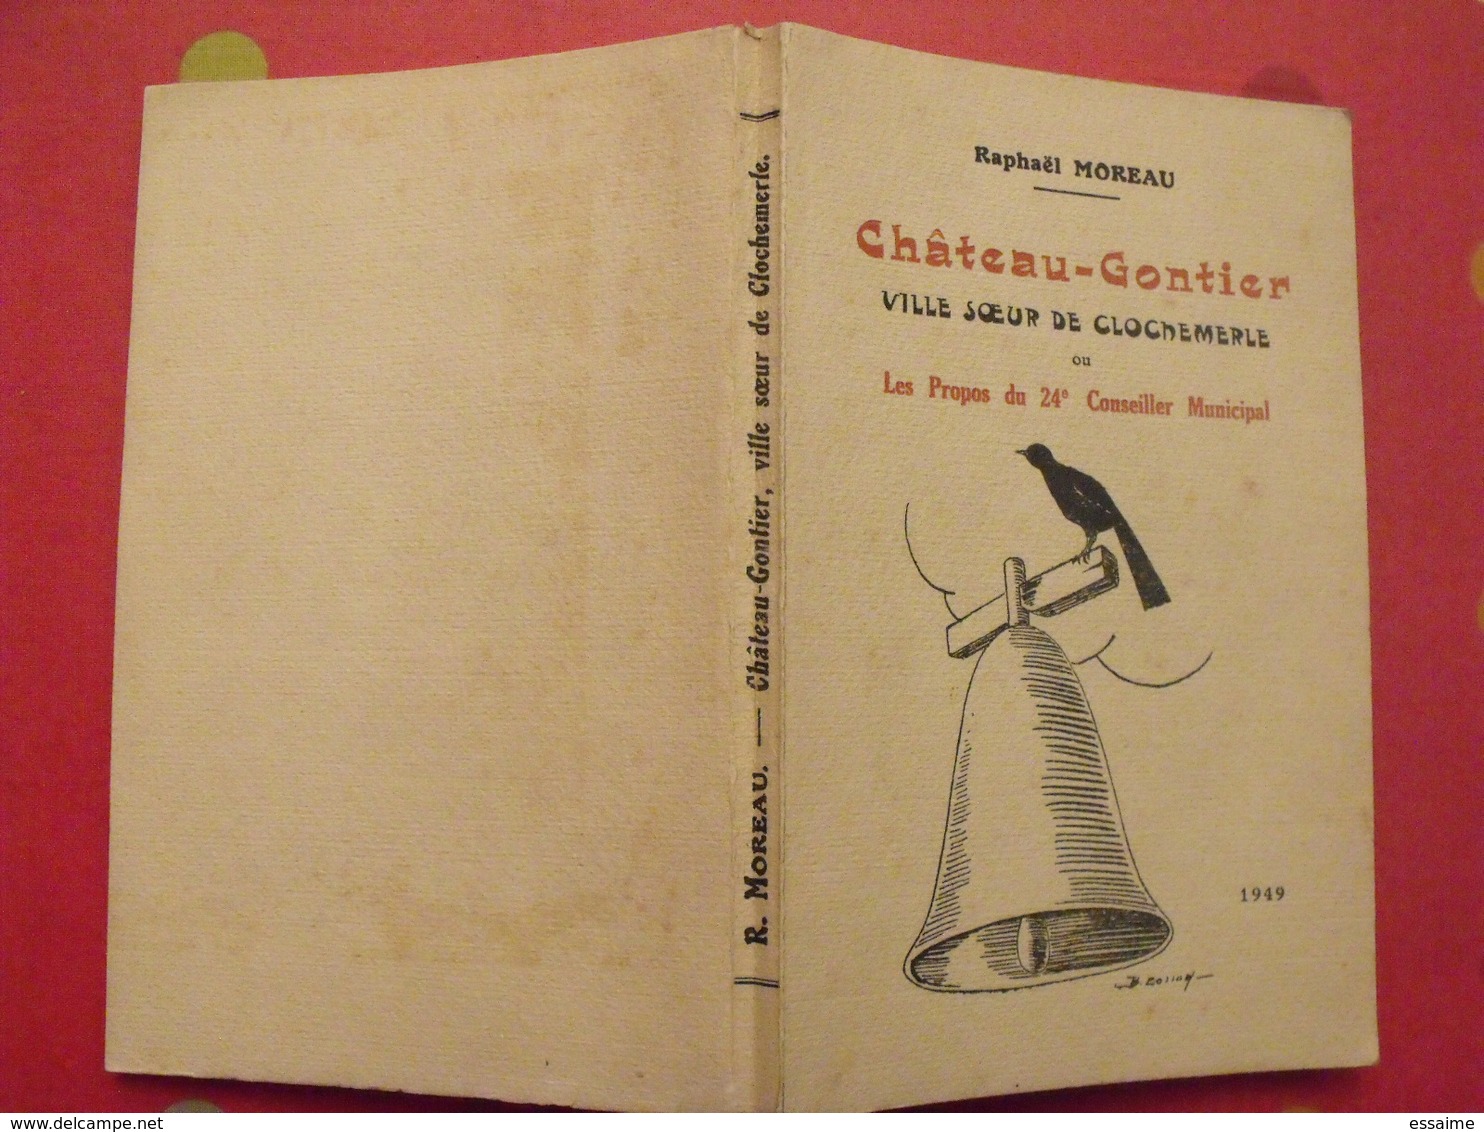 Chateau-Gontier, Ville Soeur De Clochemerle. Raphaël Moreau. 1949. 17 Dessins De Bernard Cosson - Pays De Loire